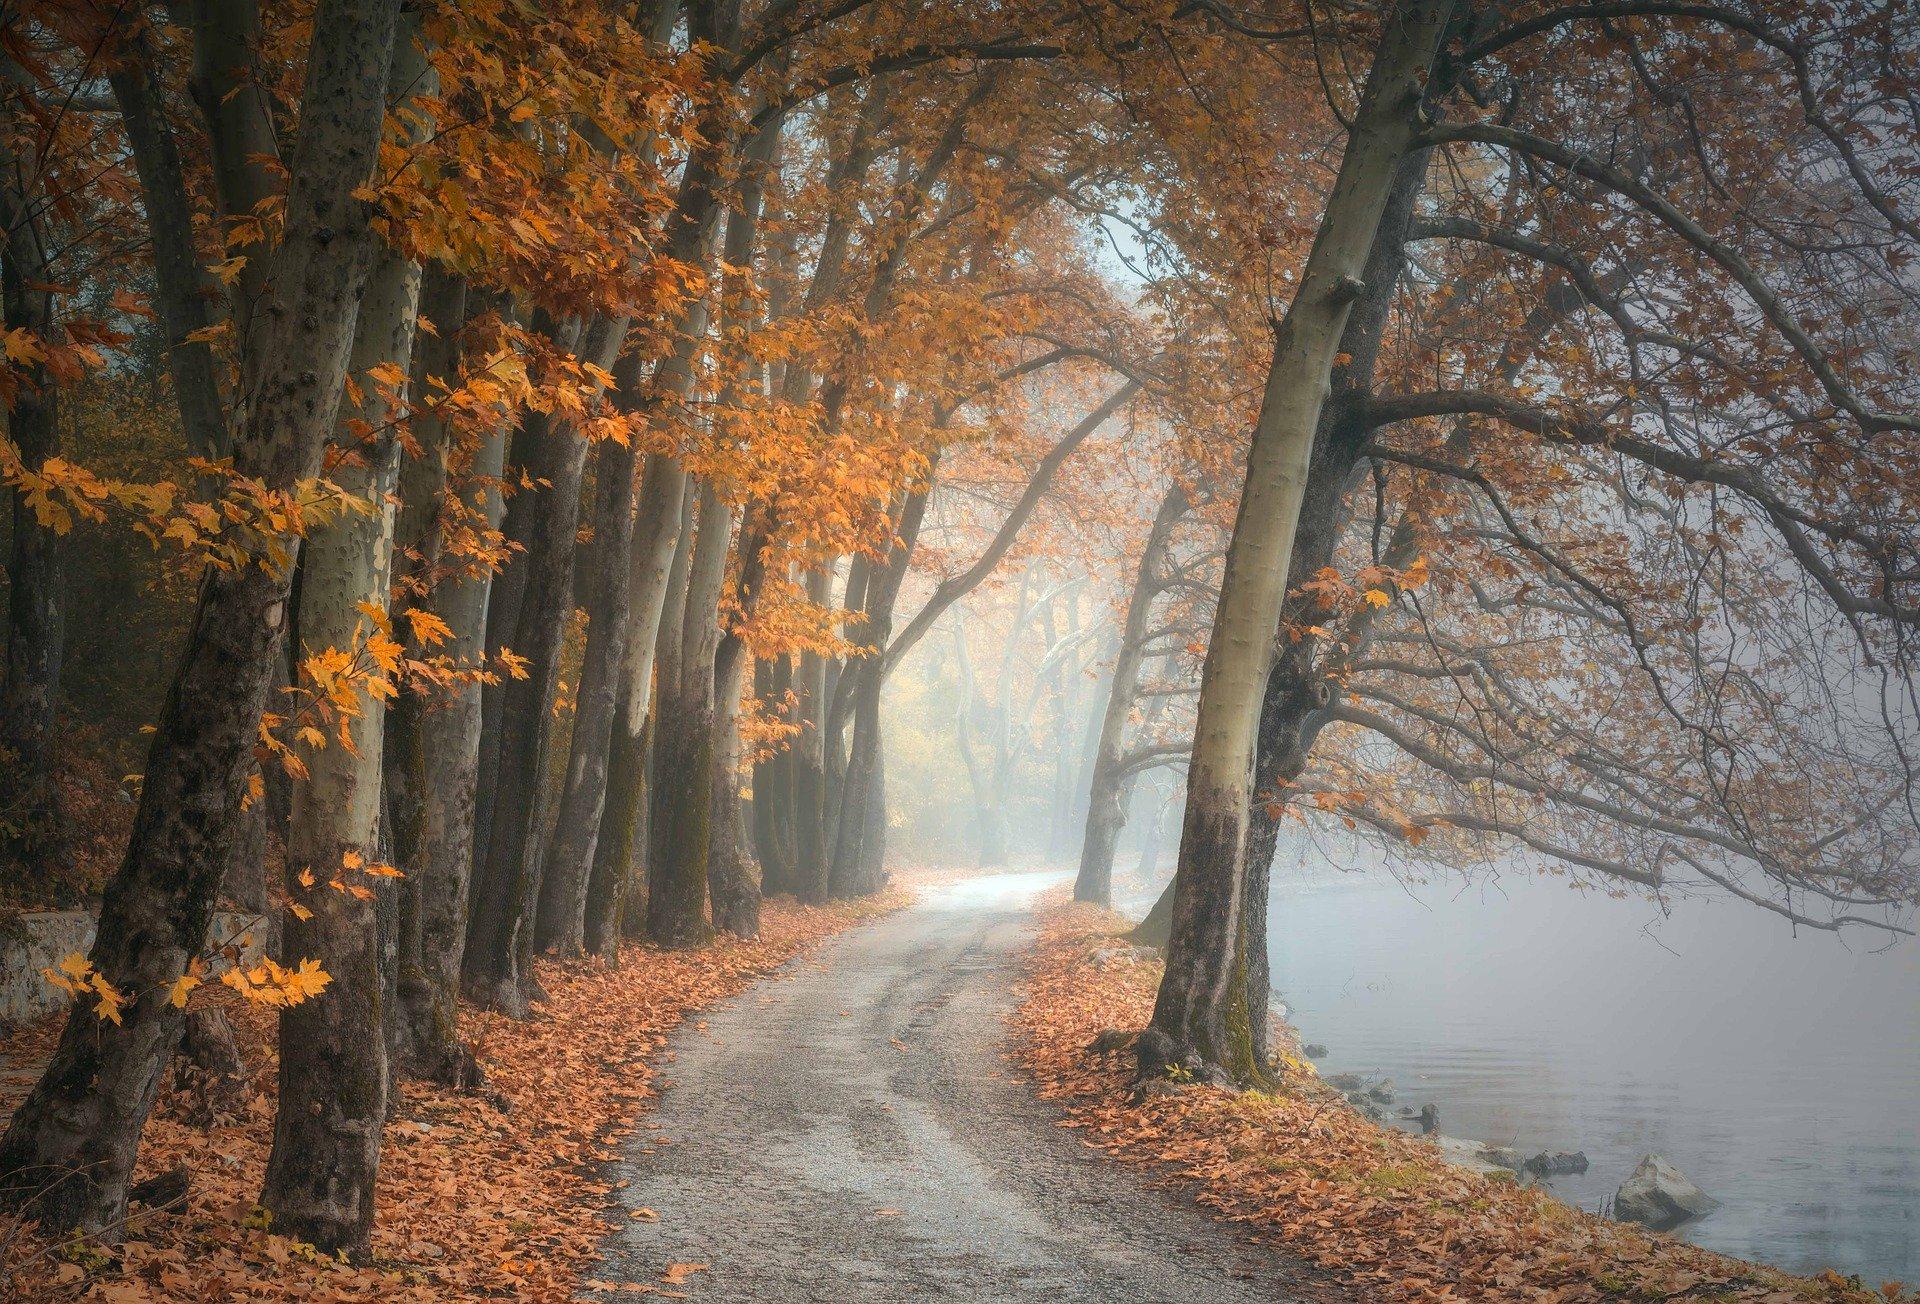 Stimmungsbild zum Beitrag: Es wird ein Waldweg an einem nebeligem See abgebildet. Herbstlaub ist auf und unter den Bäumen.